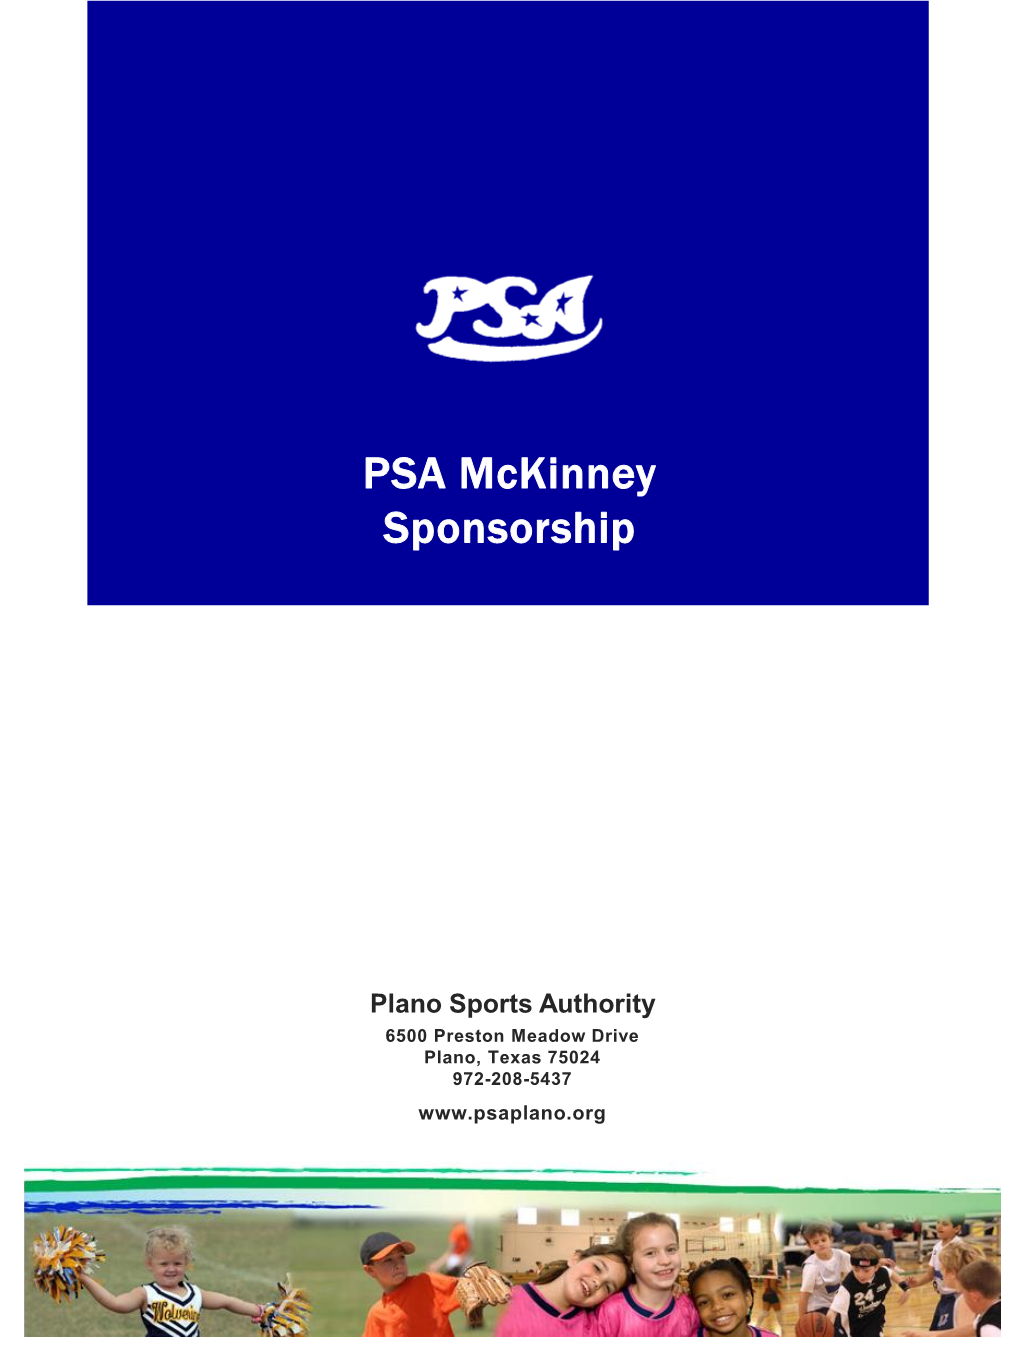 PSA Mckinney Sponsorship Presentation 2020